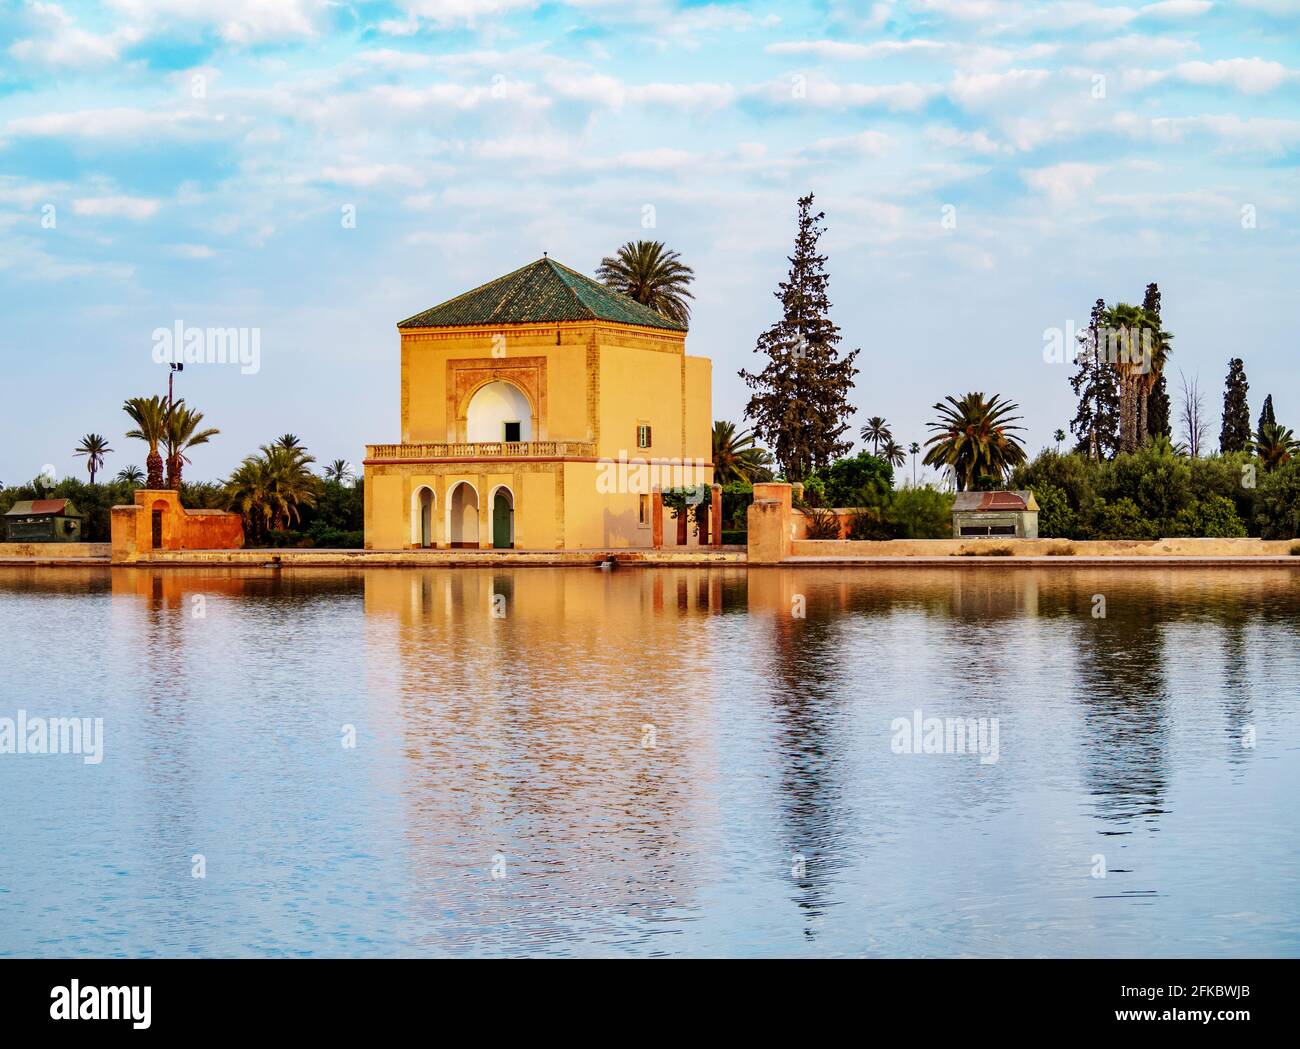 Der Pavillon in den Menara-Gärten, Marrakesch, Marrakesch-Safi-Region, Marokko, Nordafrika, Afrika Stockfoto